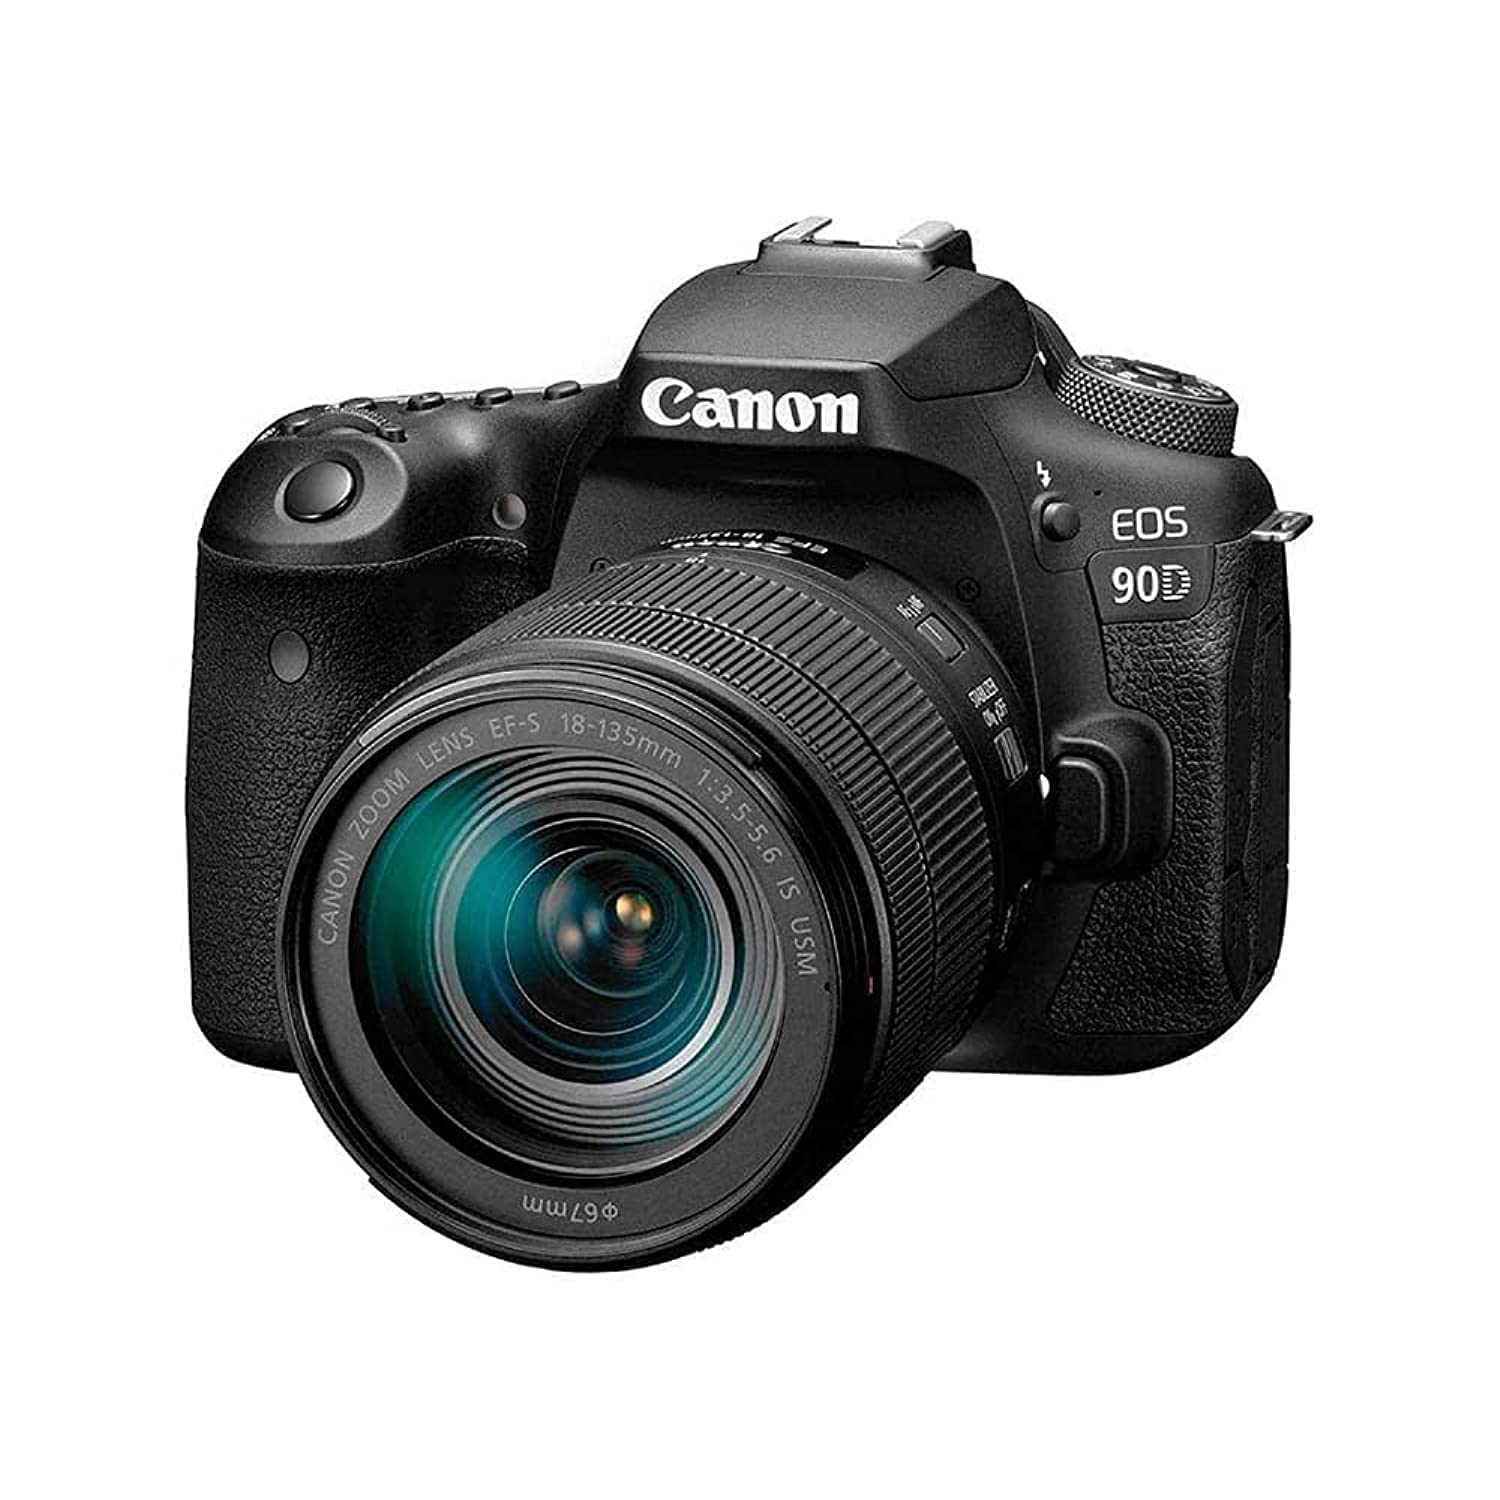 Canon 90D Digital SLR